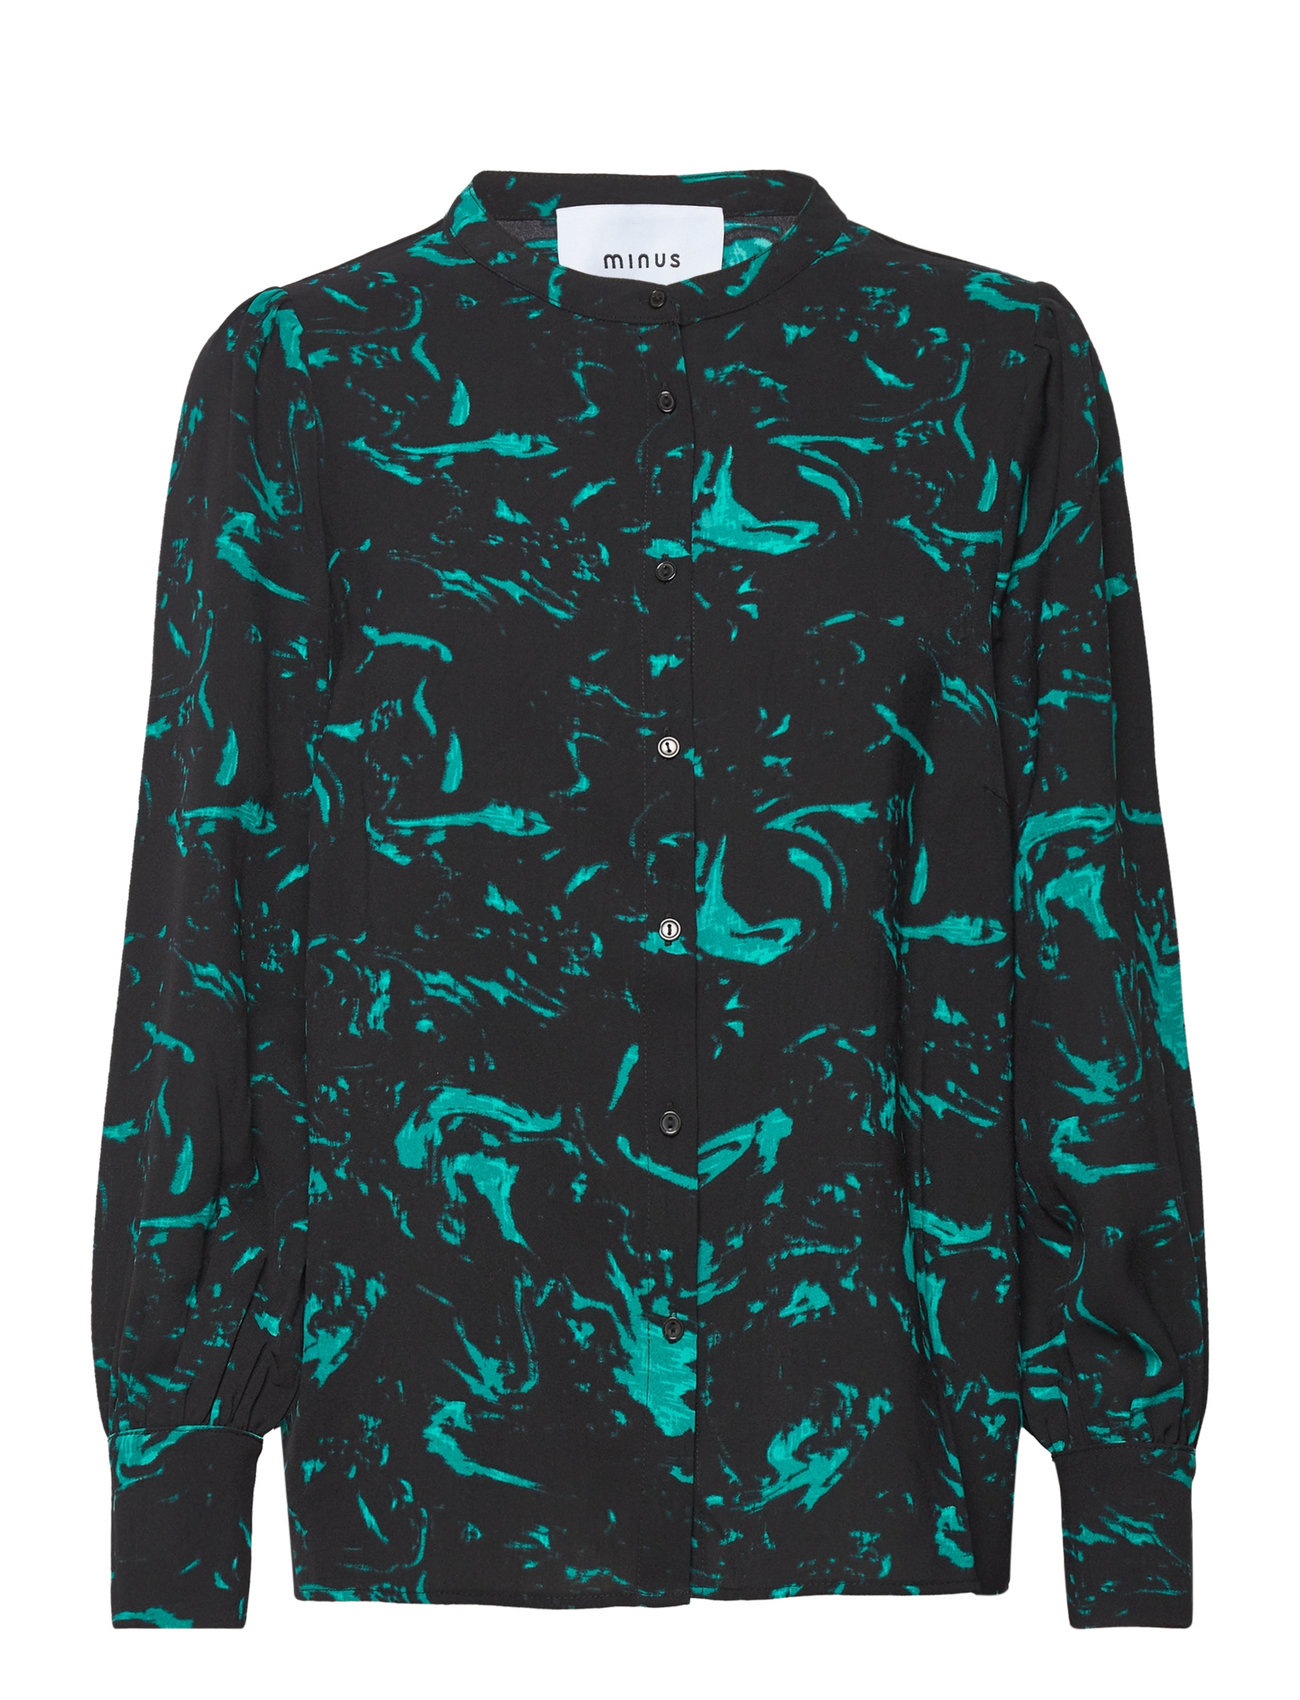 Bibliografi virkelighed fordel Minus Selena Skjorte (Ocean Green Swirl Print), 405 kr | Stort udvalg af  designer mærker | Booztlet.com